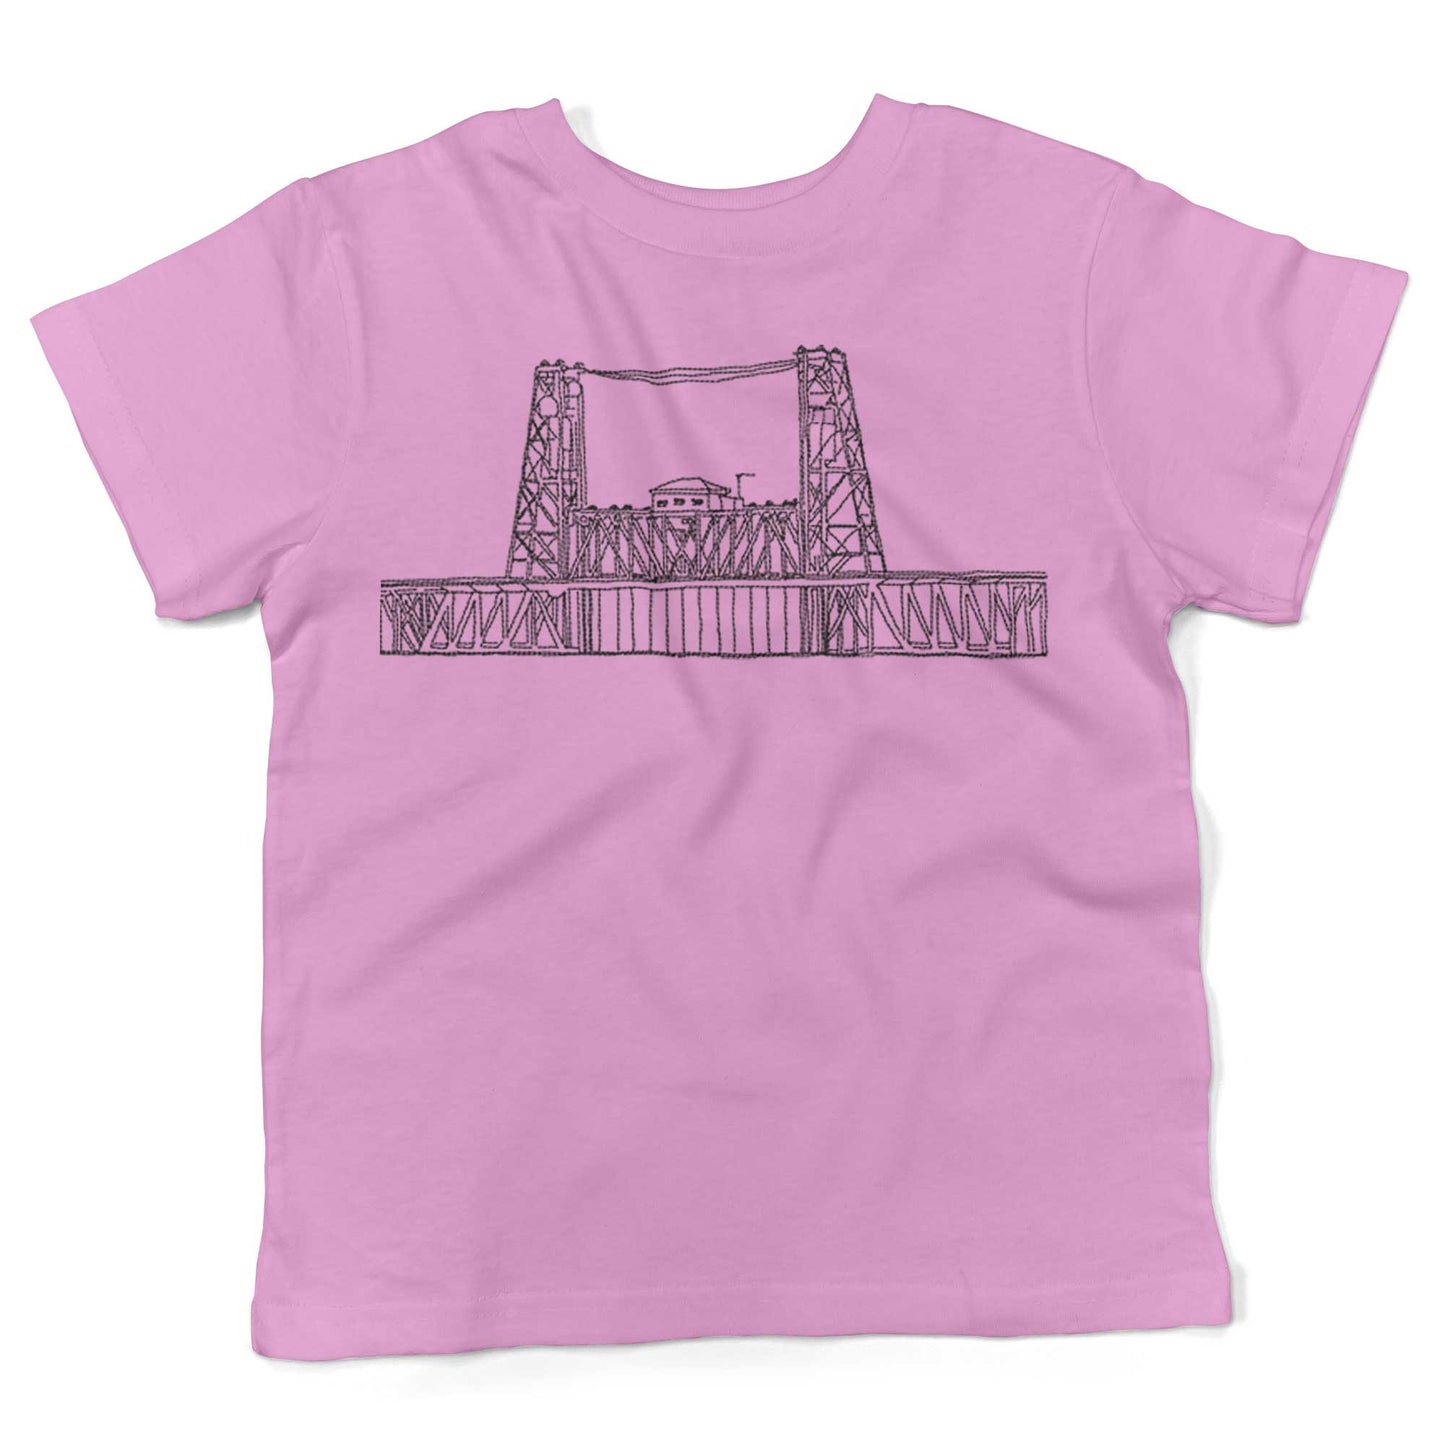 Steel Bridge Toddler Shirt-Organic Pink-2T